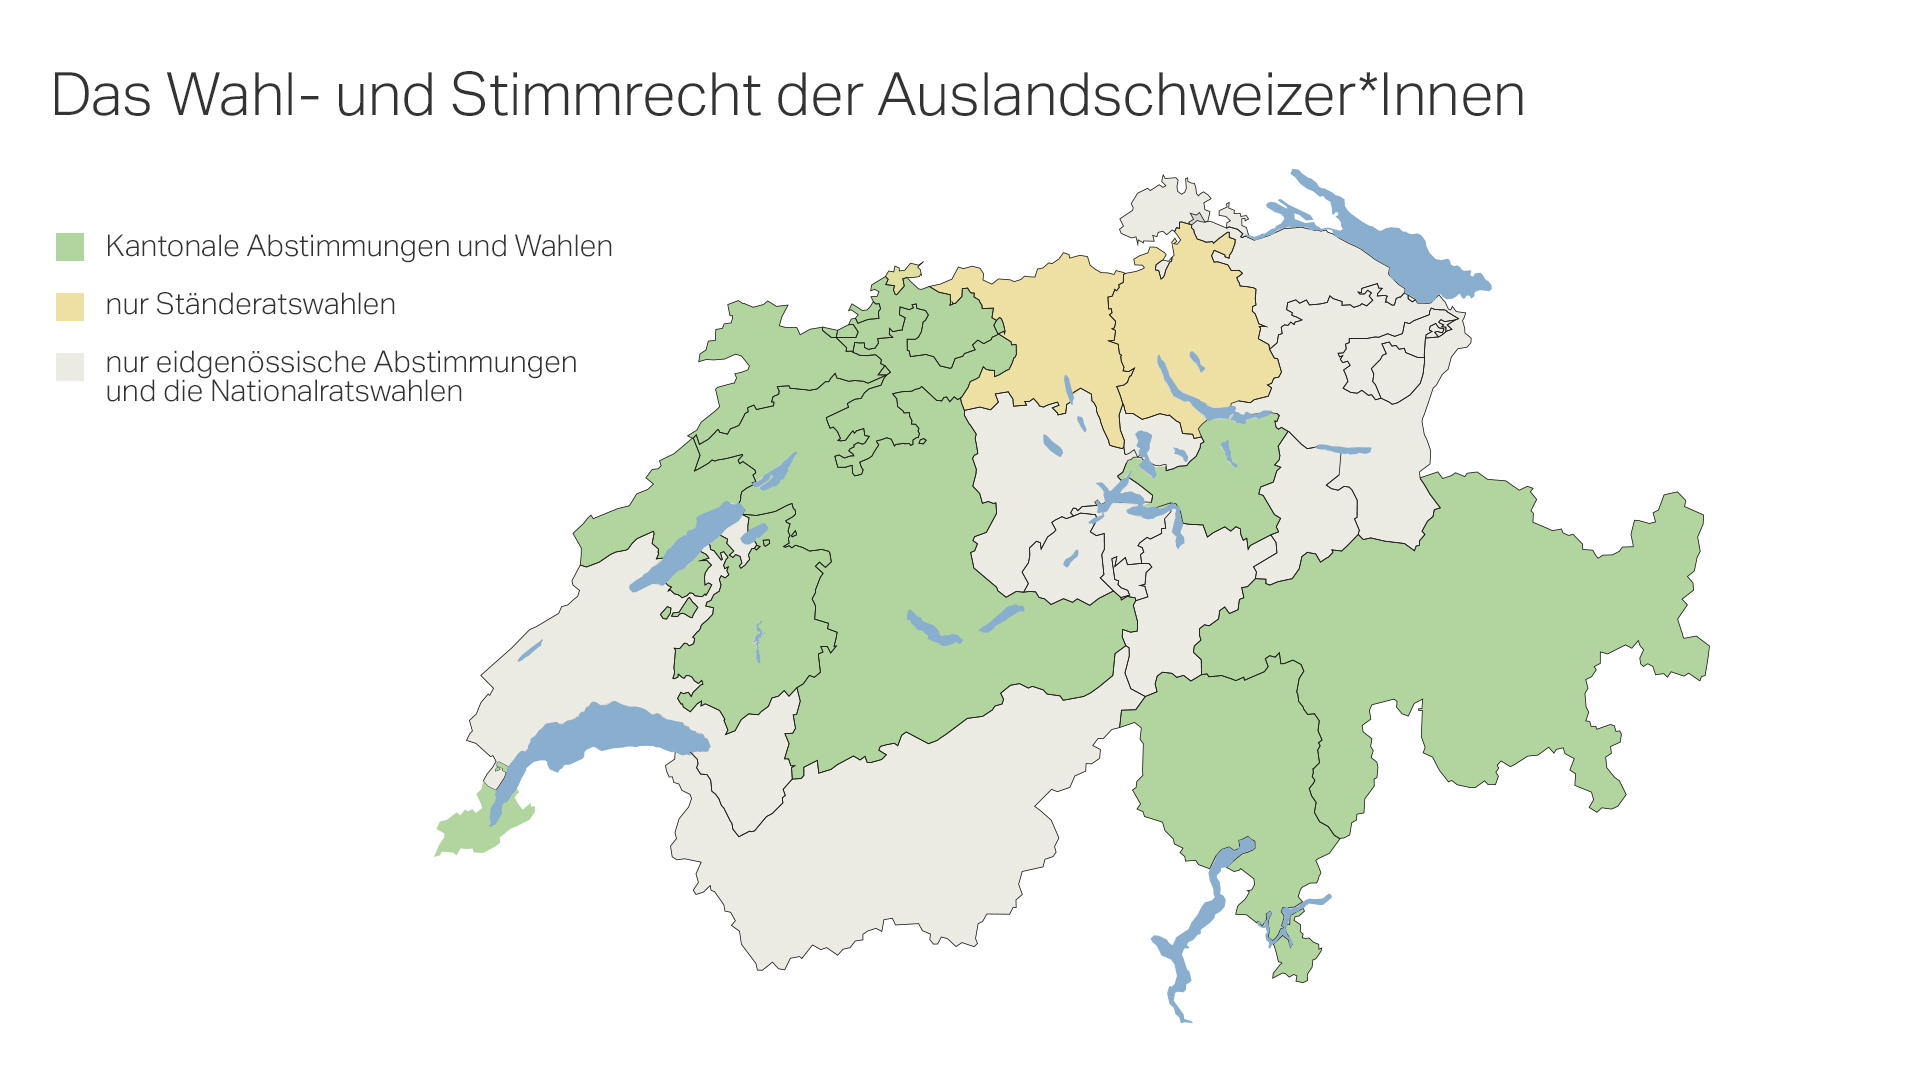 Das Wahl- und Stimmrecht der Auslandschweizer:innen